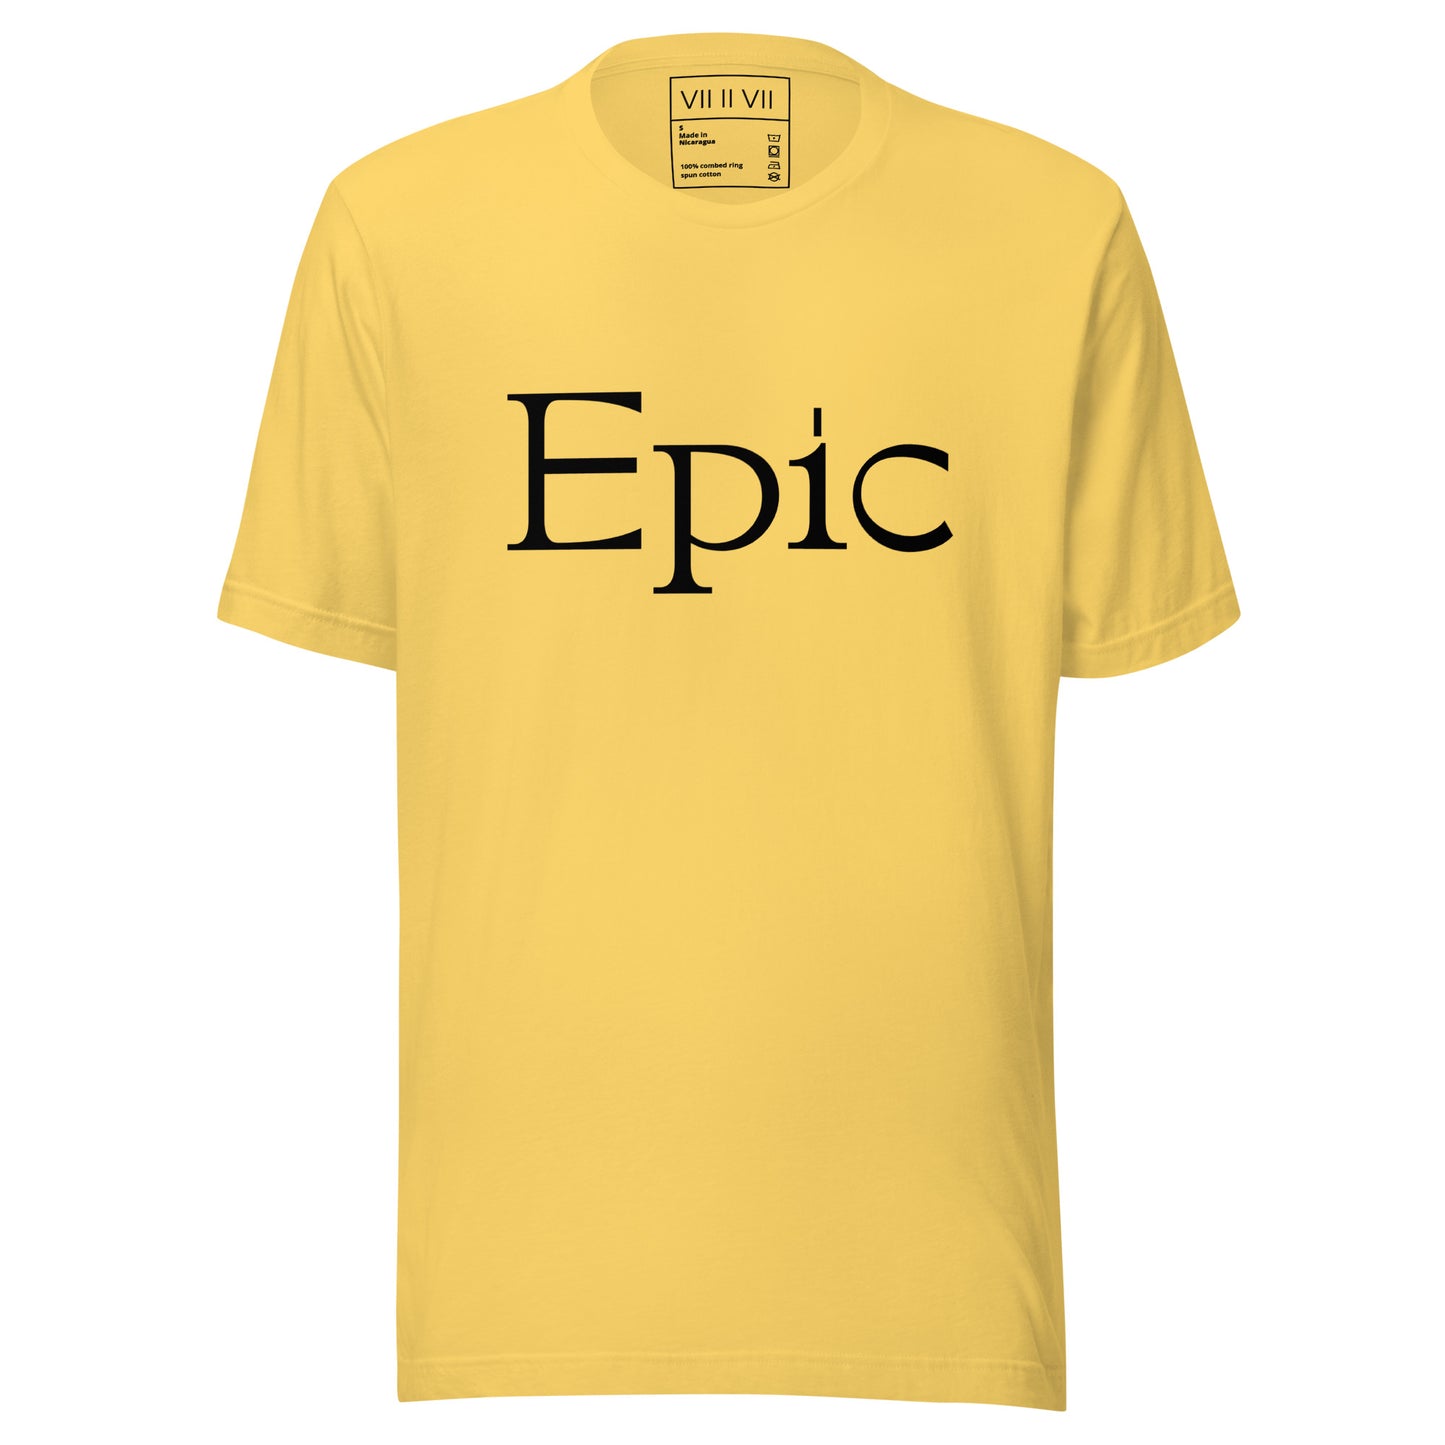 Epic- Tee